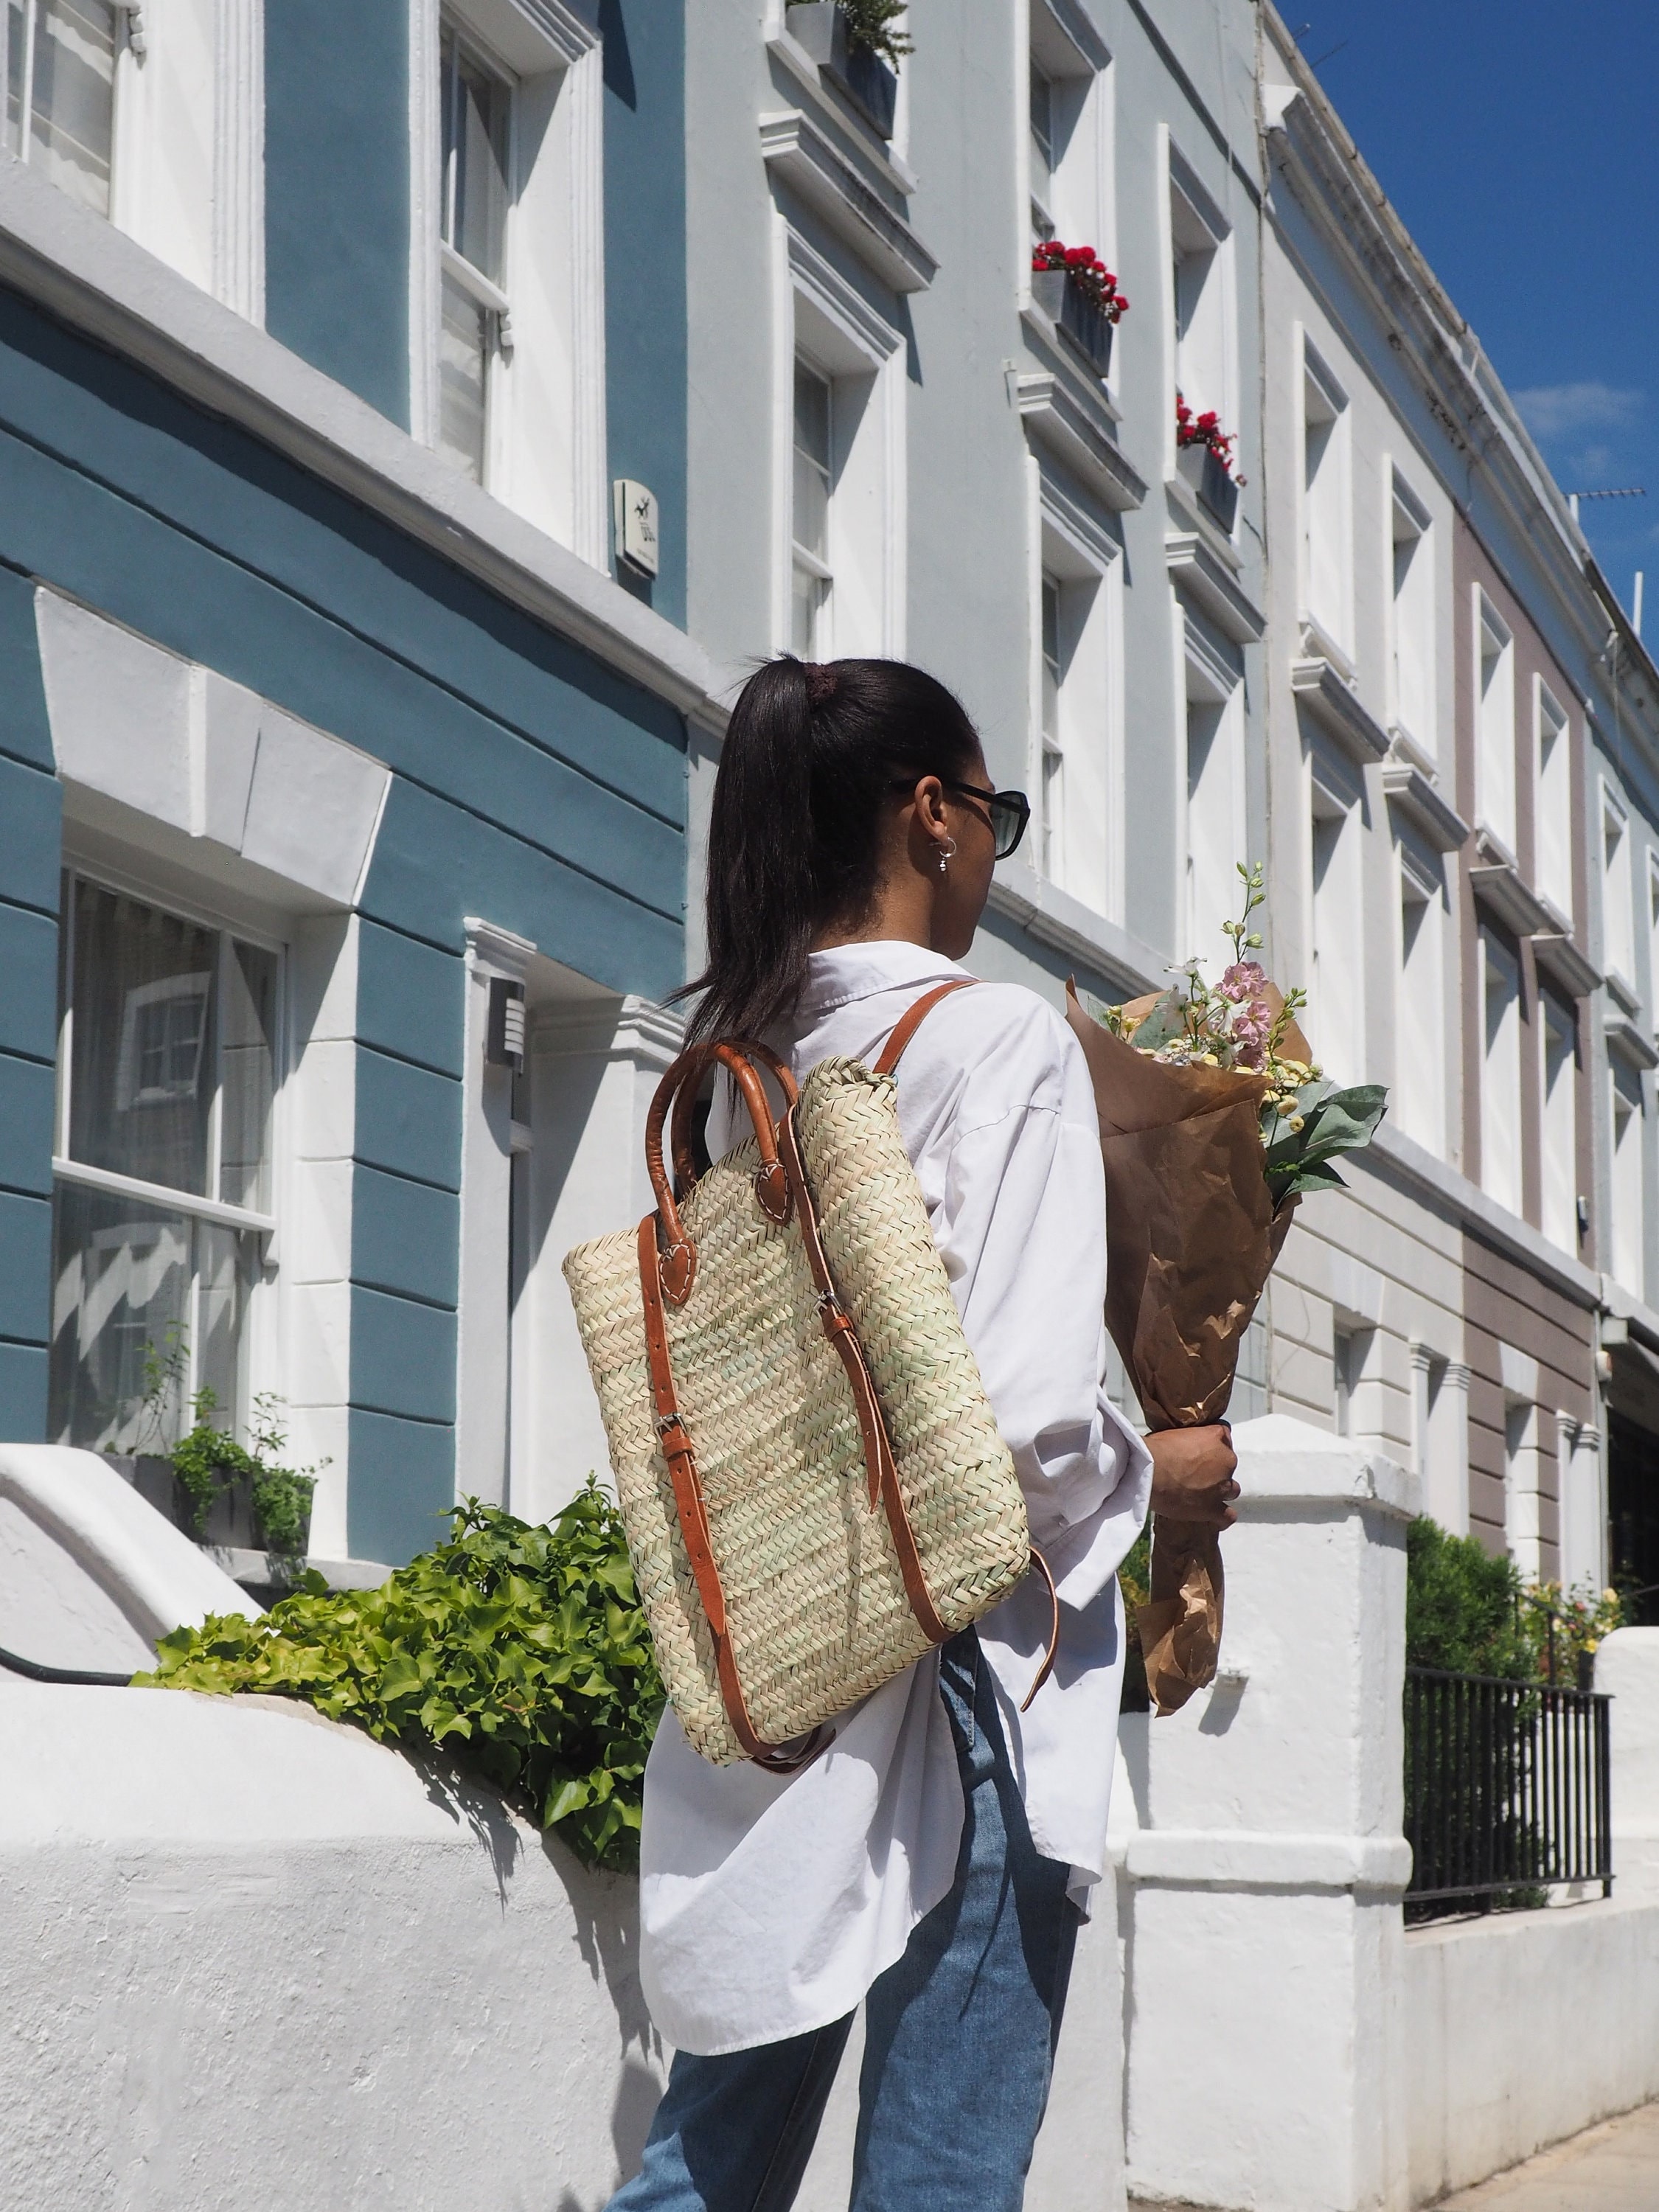 Ella Straw Basket Tote Bag: Women's Designer Tote Bags